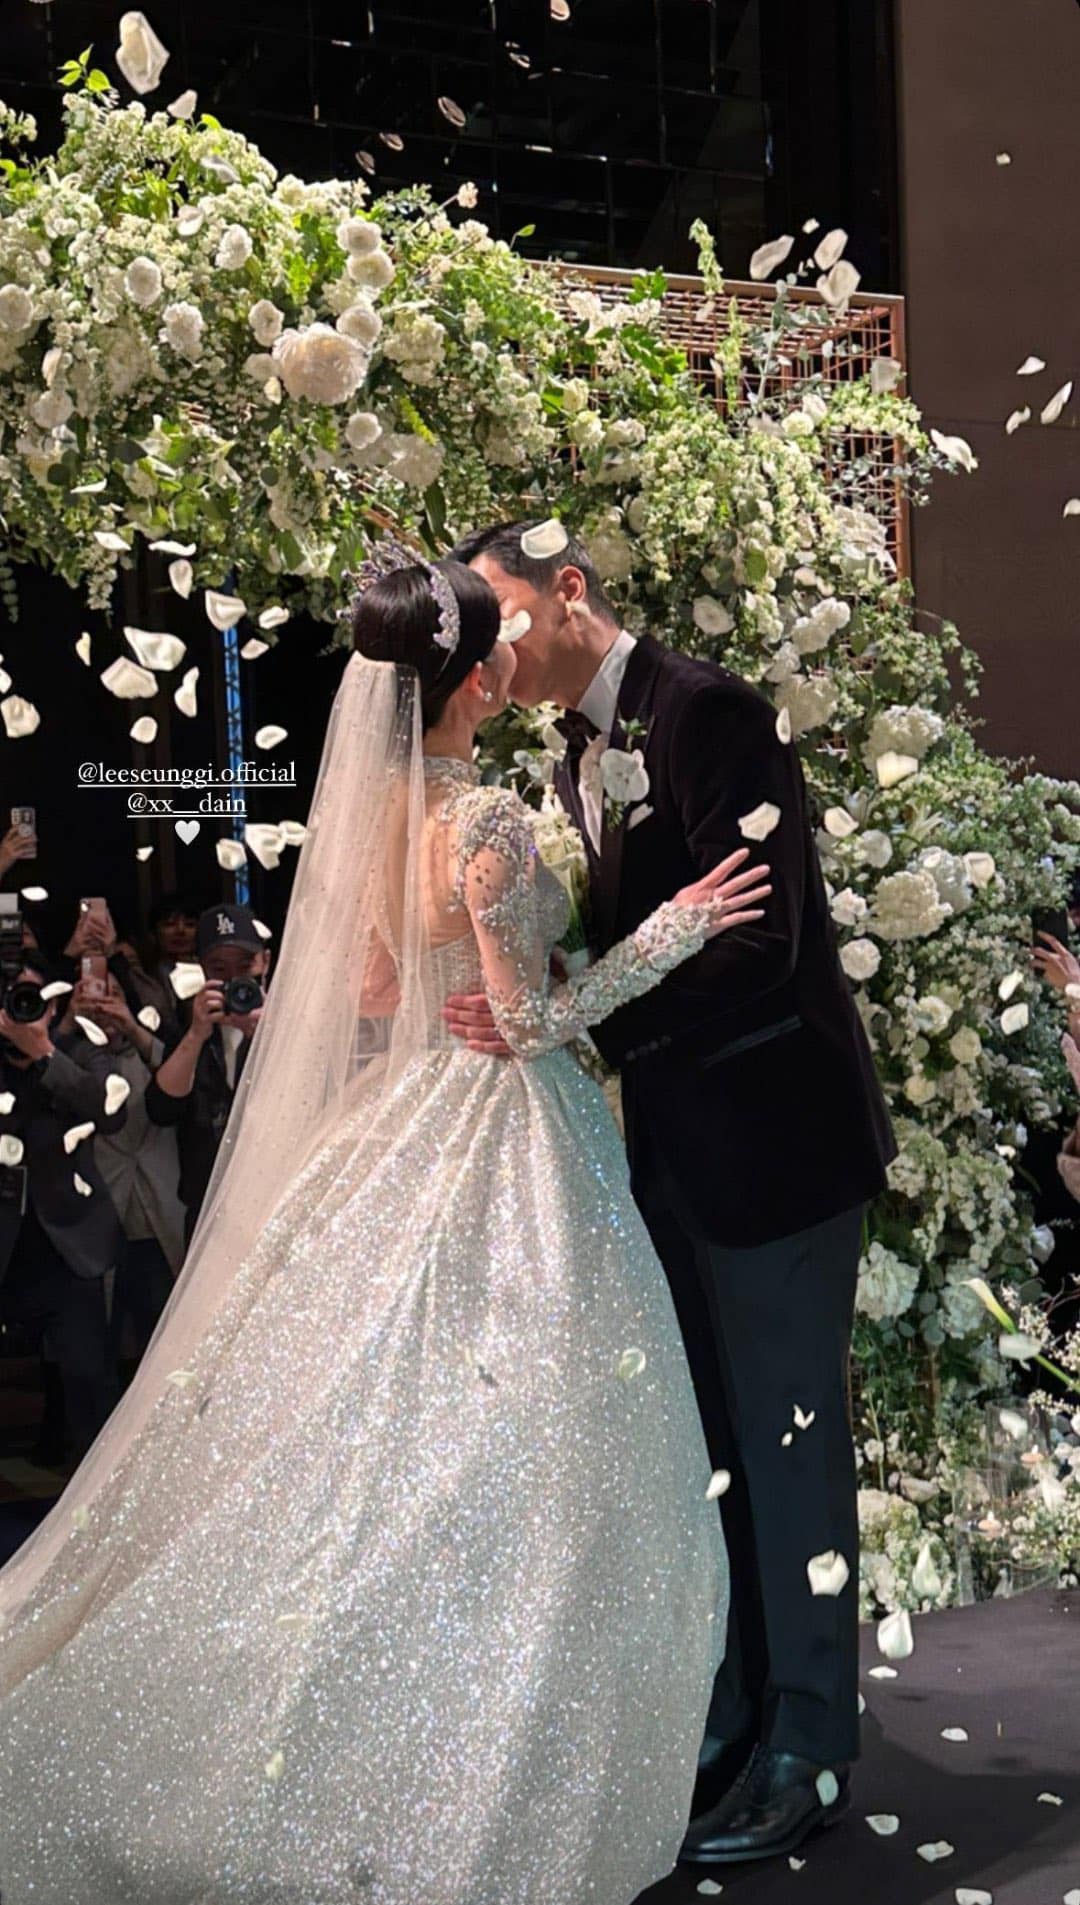 Toàn cảnh đám cưới 2 tỷ của Lee Seung Gi: Cô dâu chú rể trao nụ hôn, khách mời như lễ trao giải, tiết mục rộn ràng tựa concert - Ảnh 18.